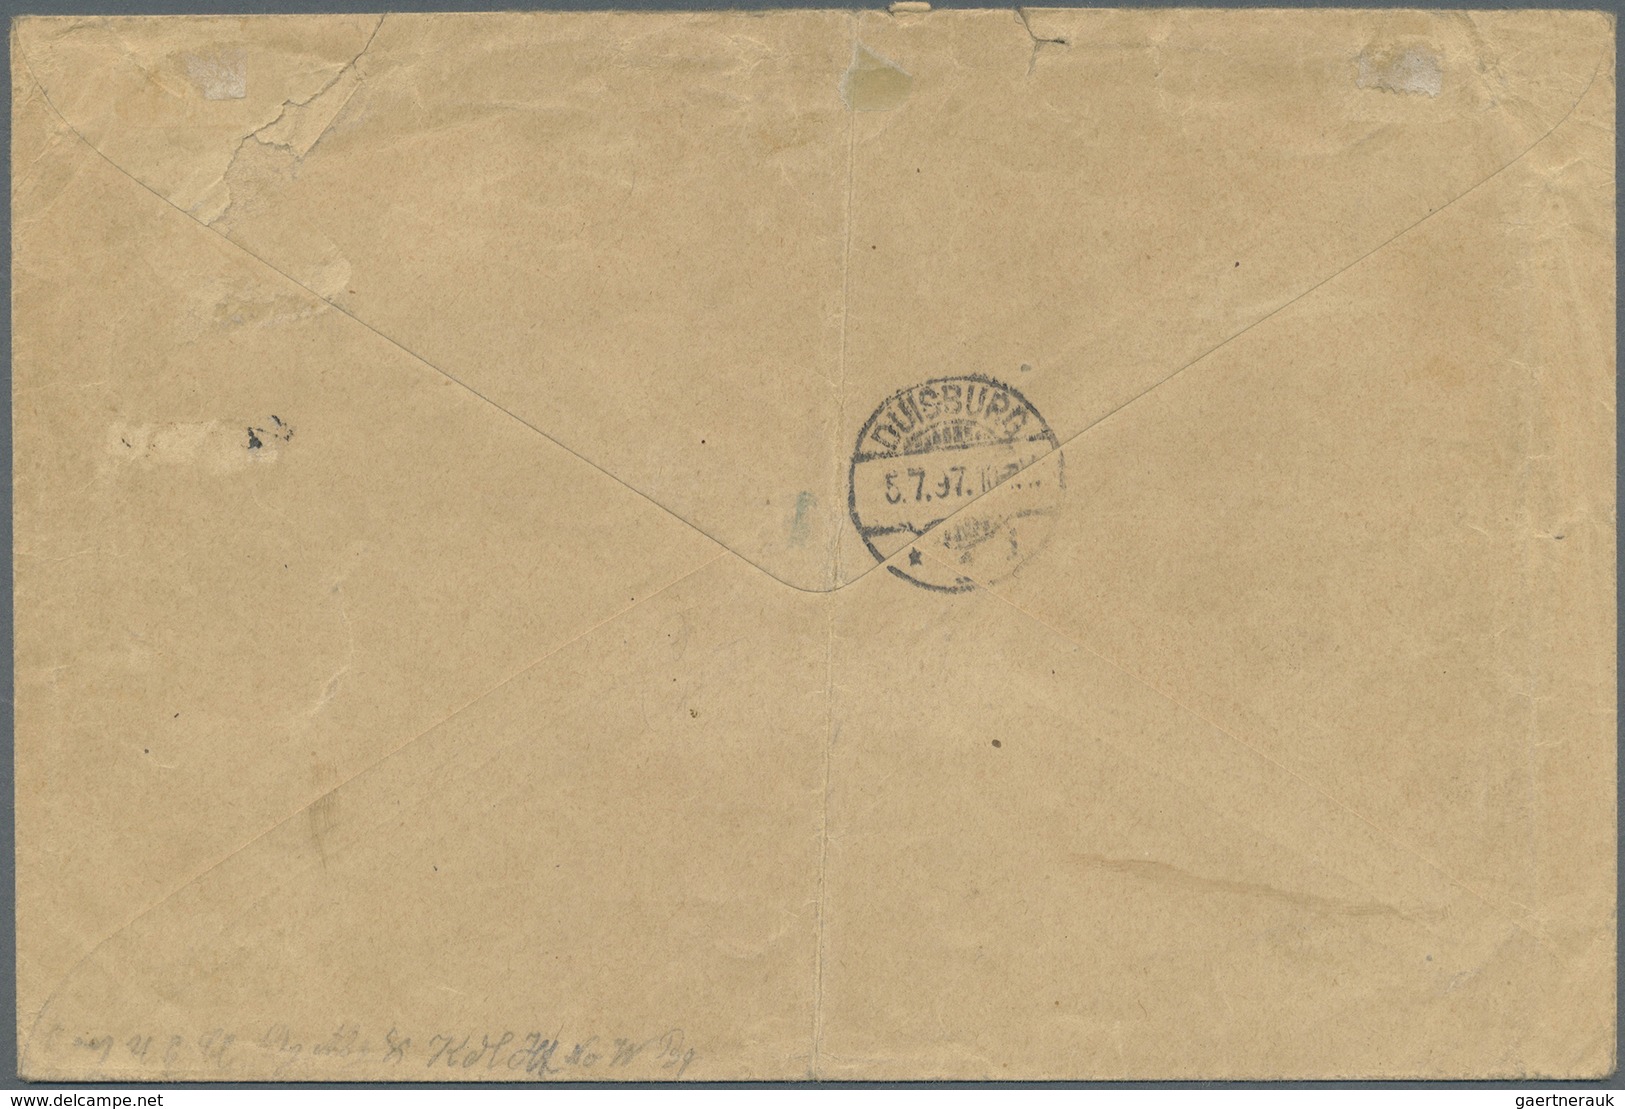 Br Deutsch-Südwestafrika - Stempel: 1897, "Omaruru 6.5.97" Handschriftlich Auf Unfrankiertem Bedarfsbri - Africa Tedesca Del Sud-Ovest